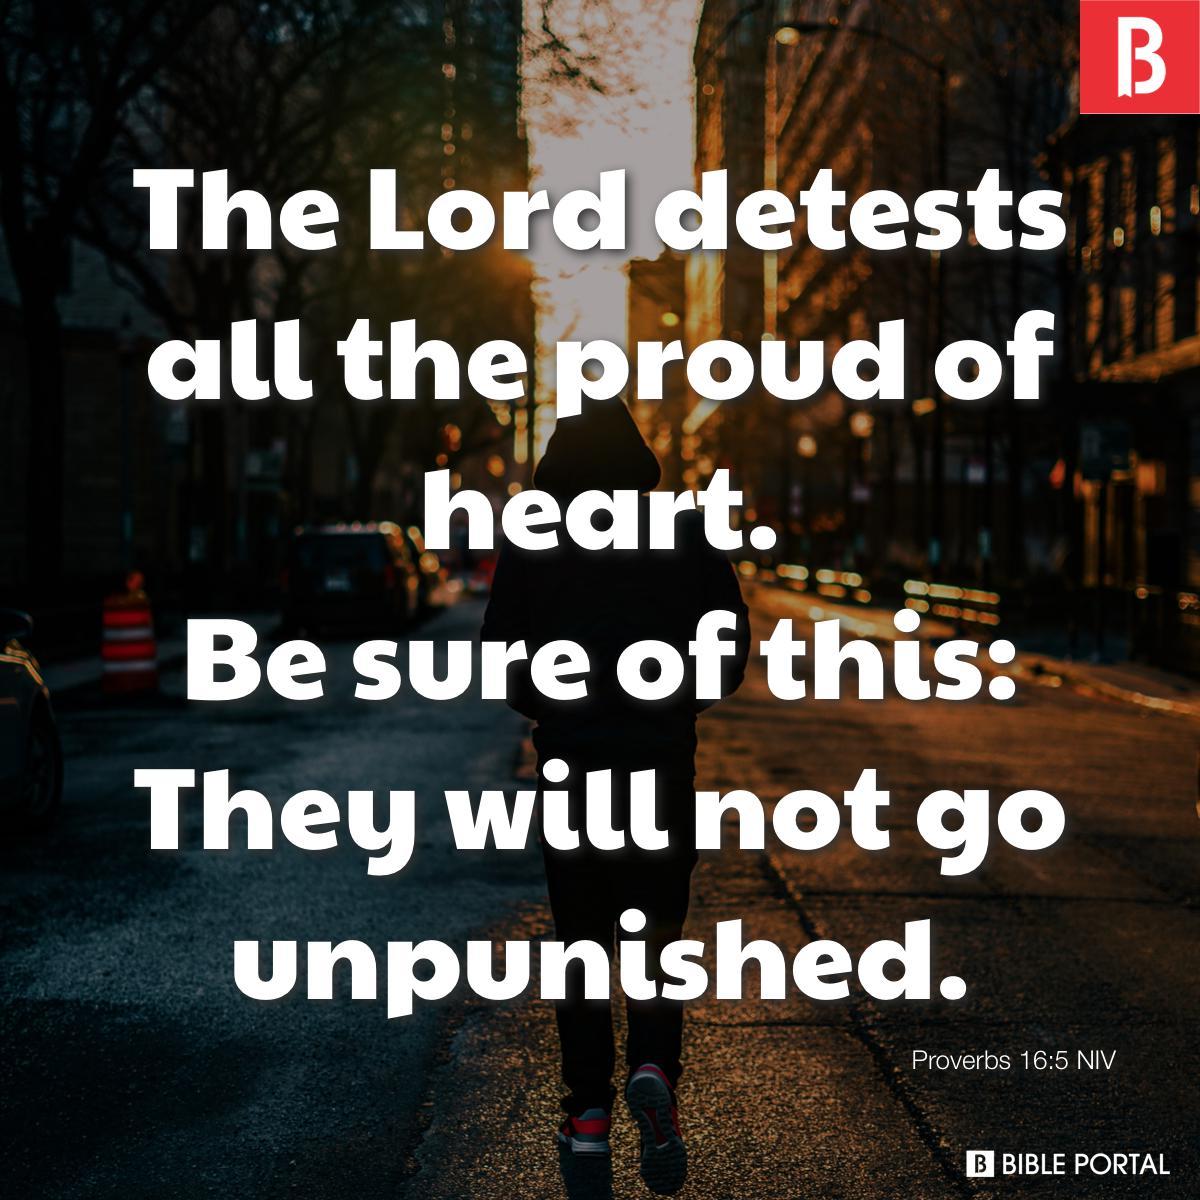 Proverbs 16:5